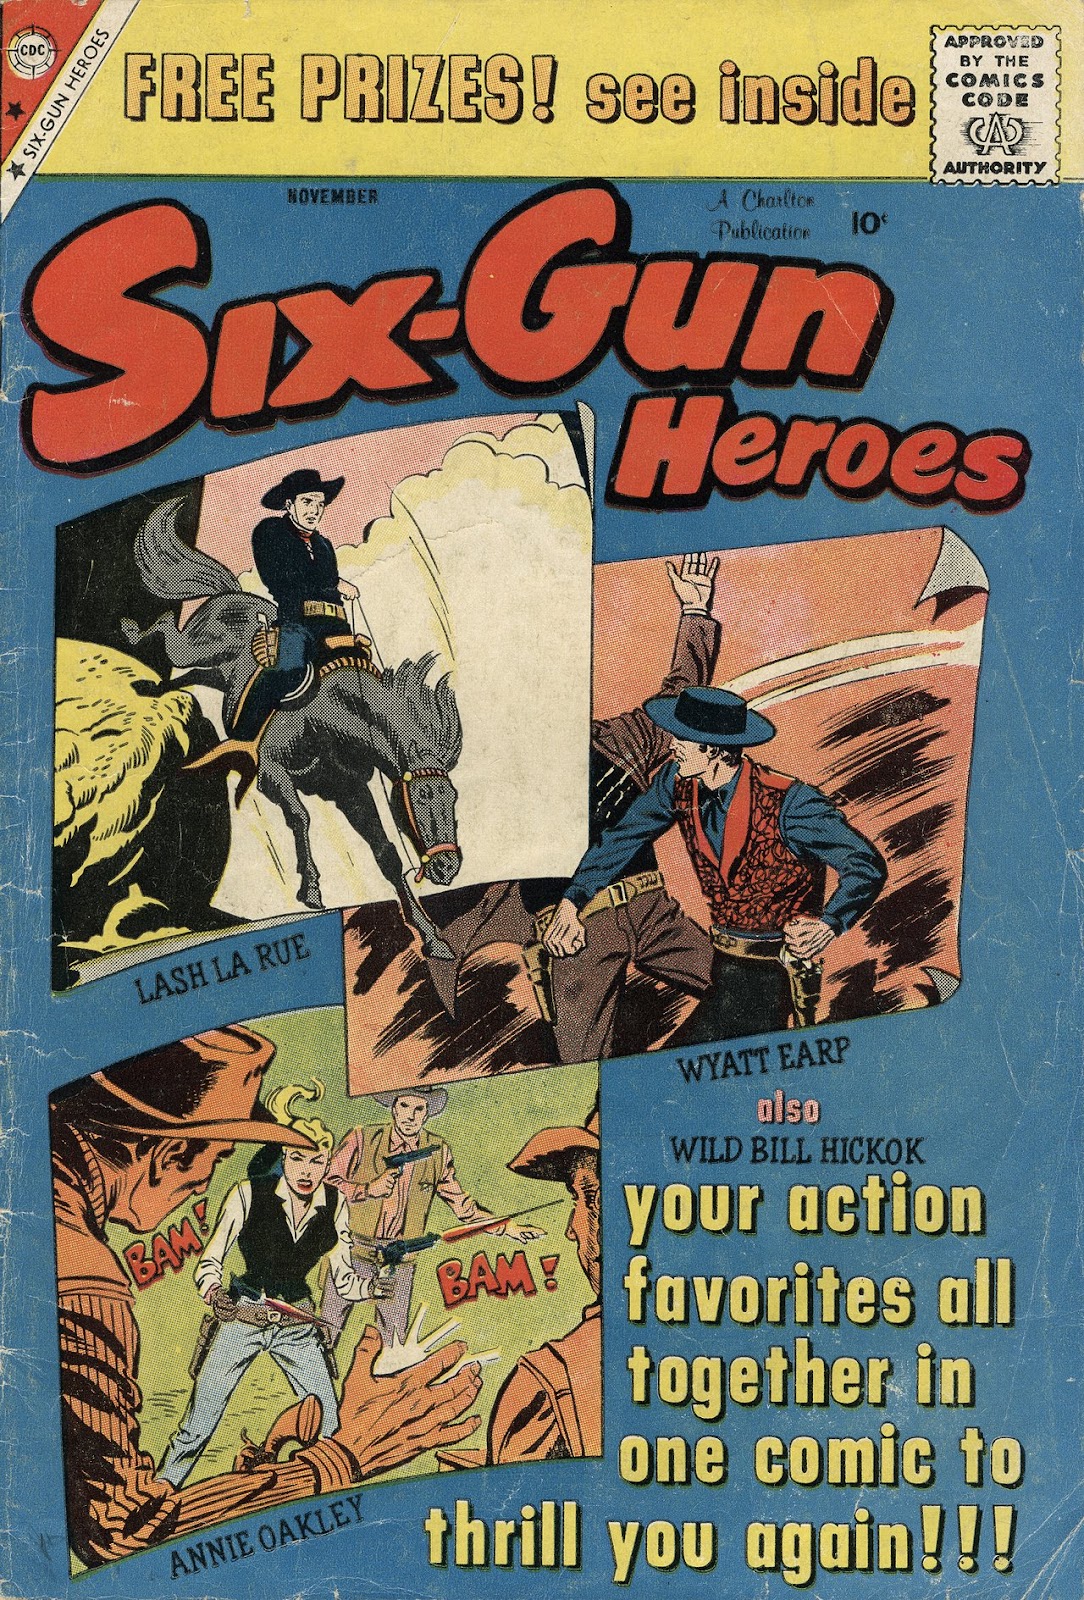 Six-Gun Heroes 54 Page 1